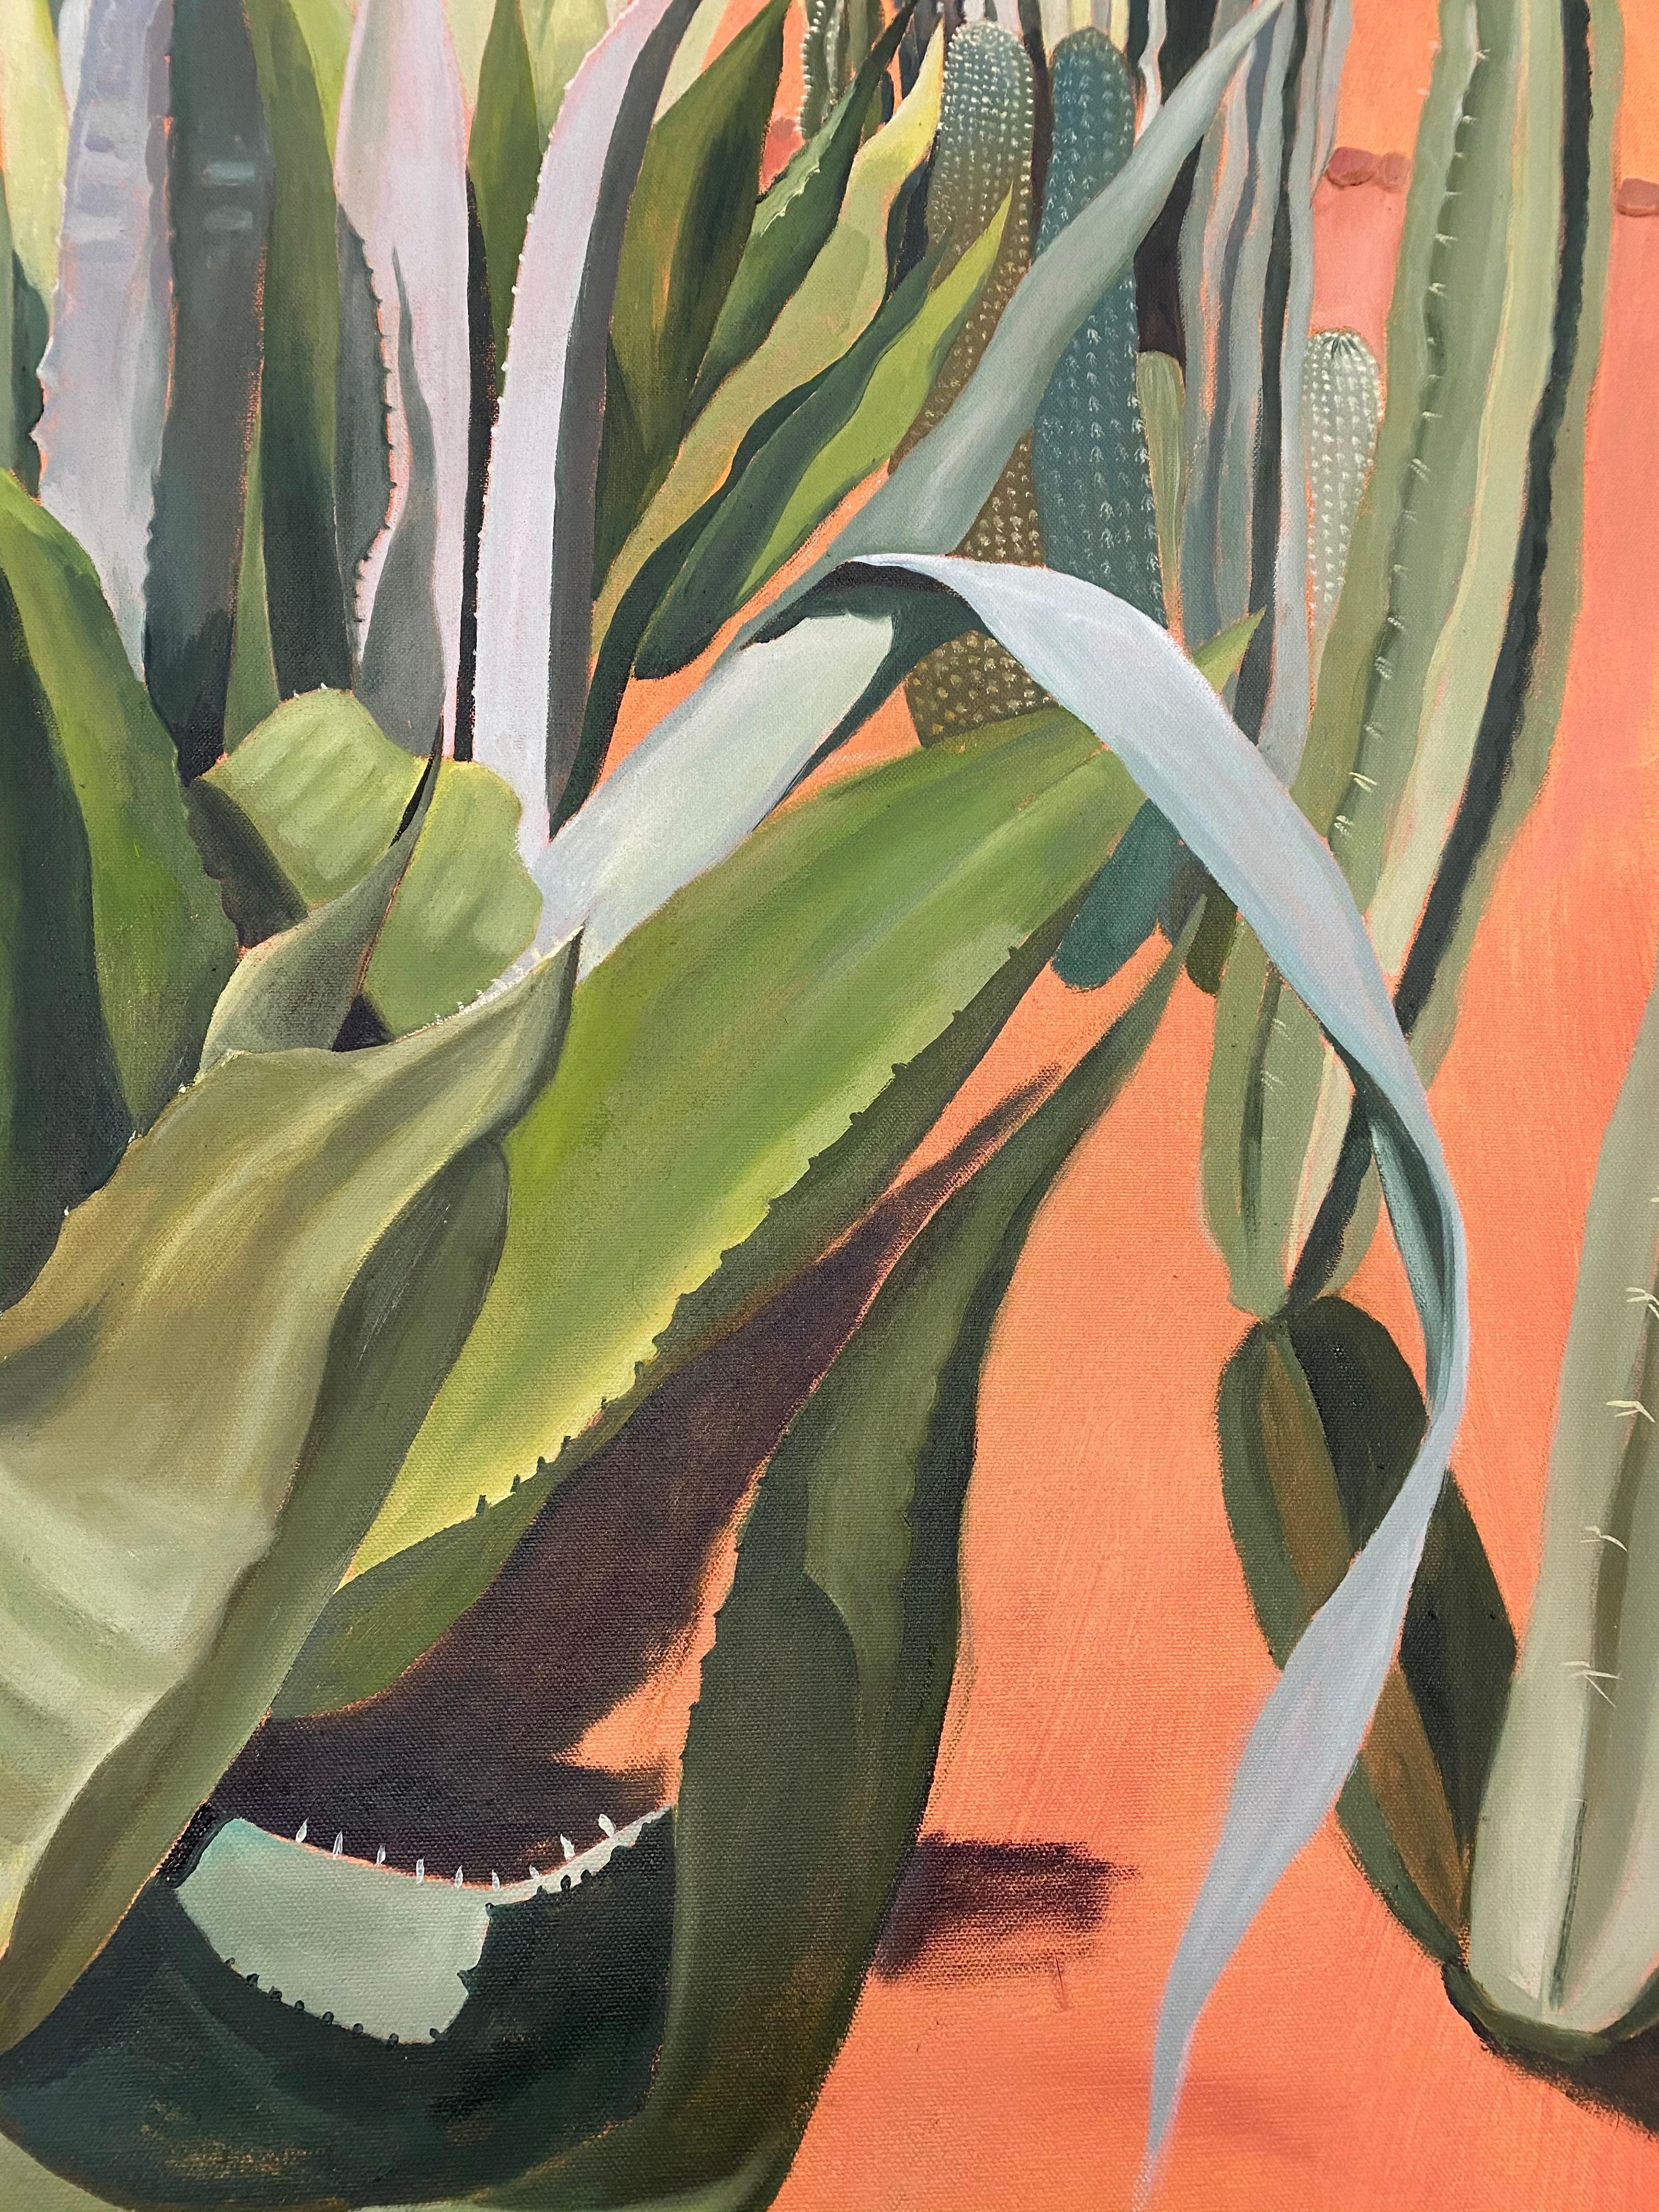 Cacti with Shadows, Musee de la Palmeraie, Morocco, Desert art, Plants, Cactus - Contemporary Painting by Elaine Kazimierczuk